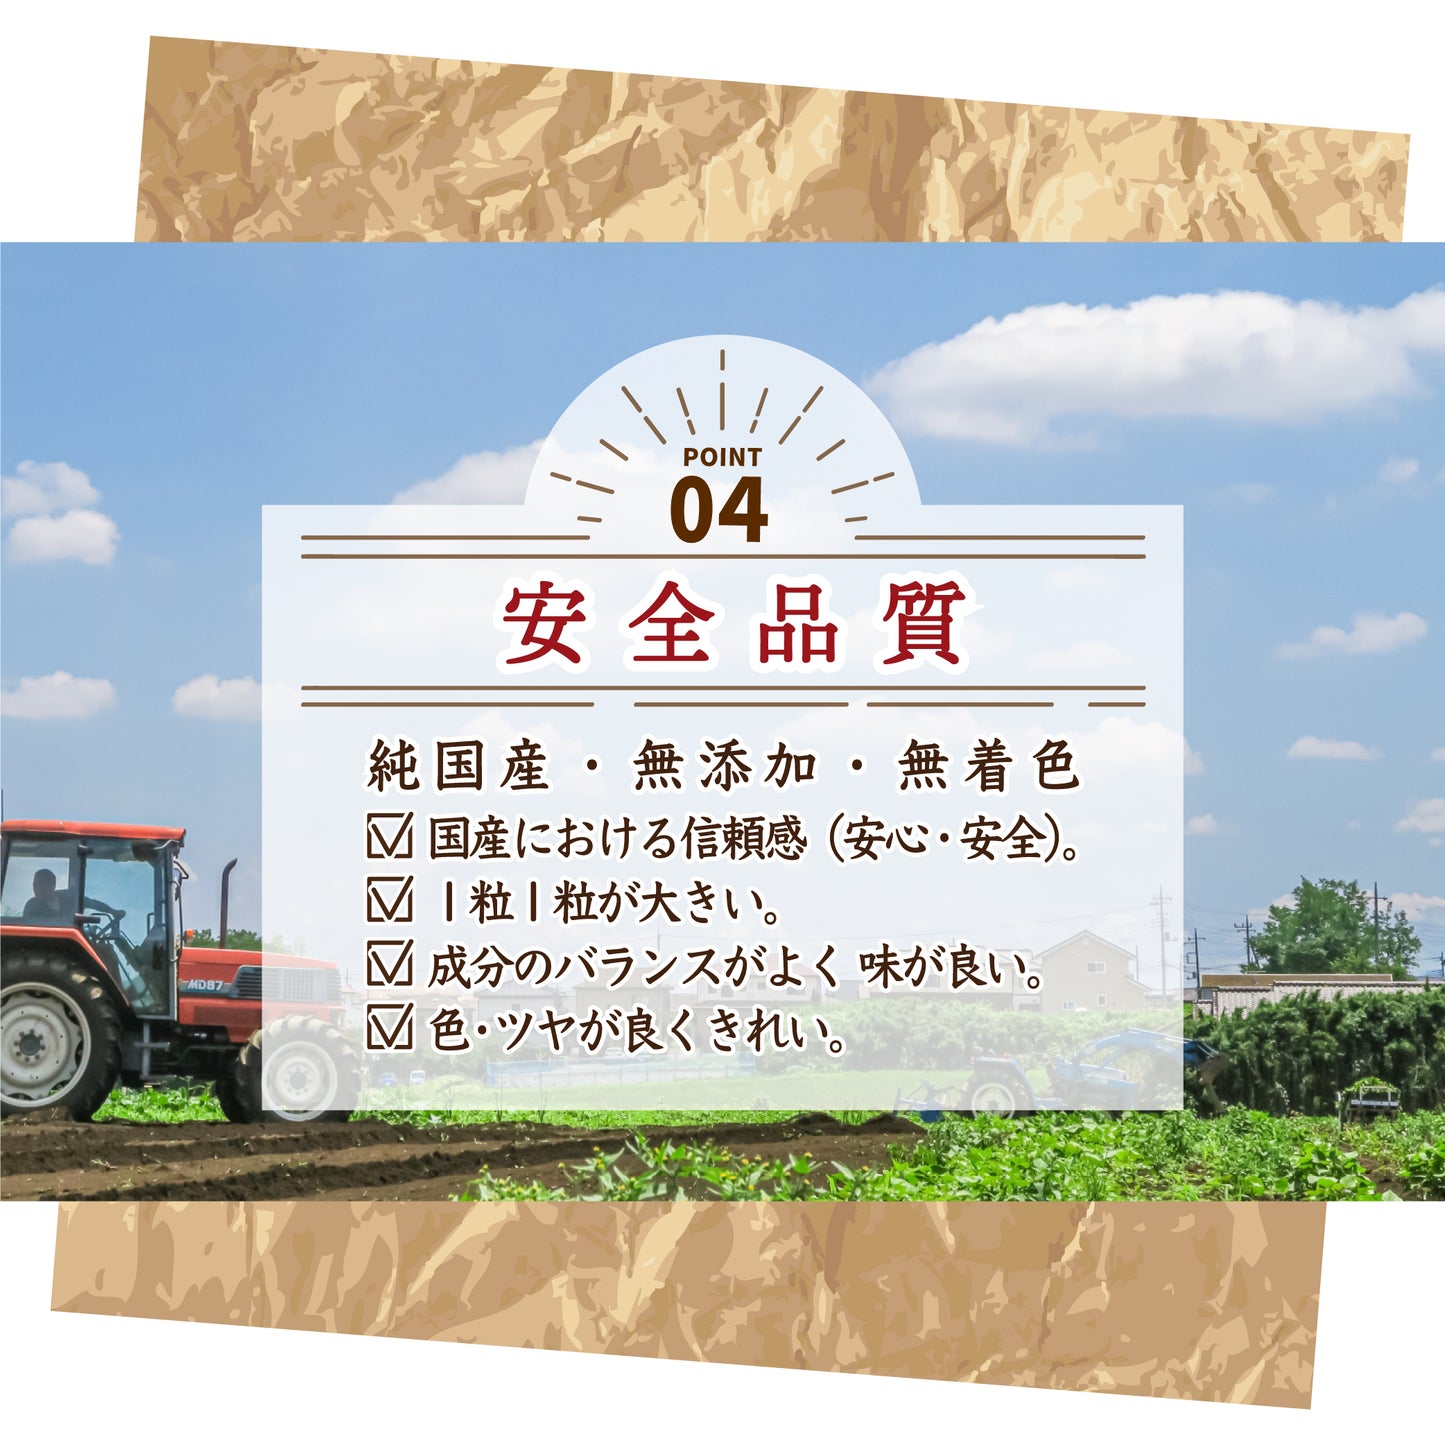 国産 黄大豆 4.5kg(450g×10袋)